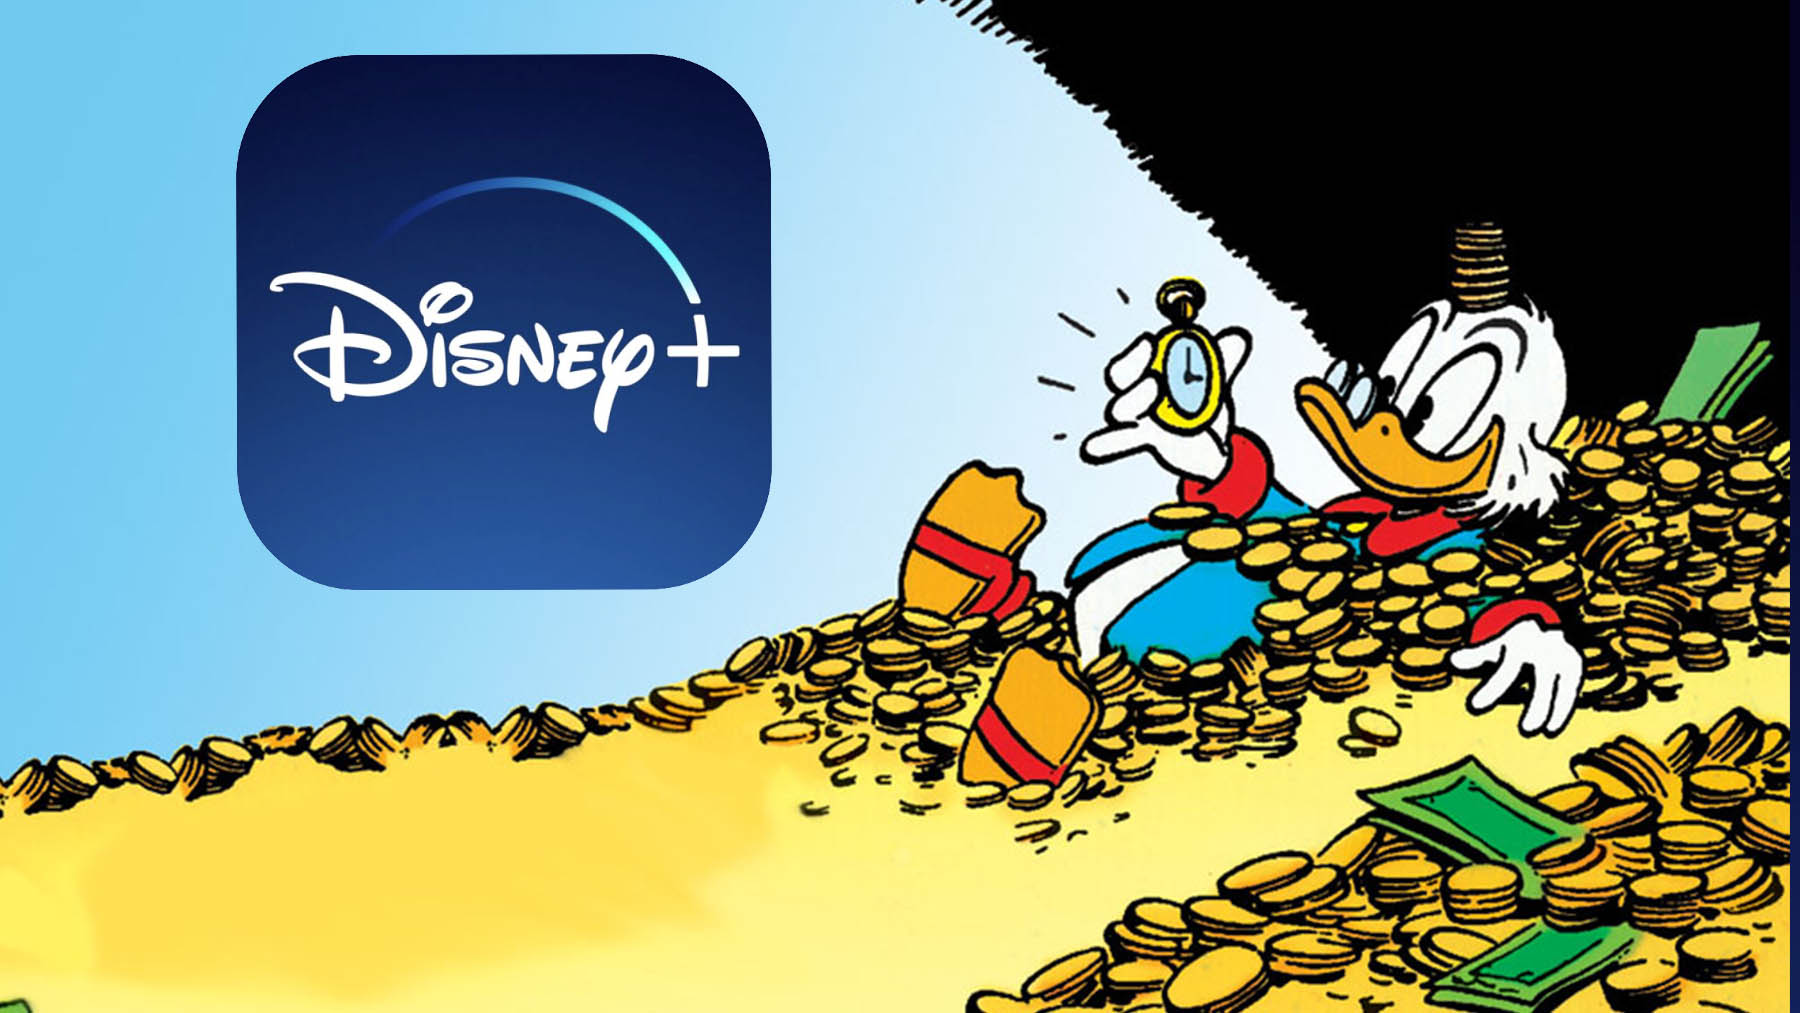 Disney Plus duplica el número de suscriptores en tan solo dos años